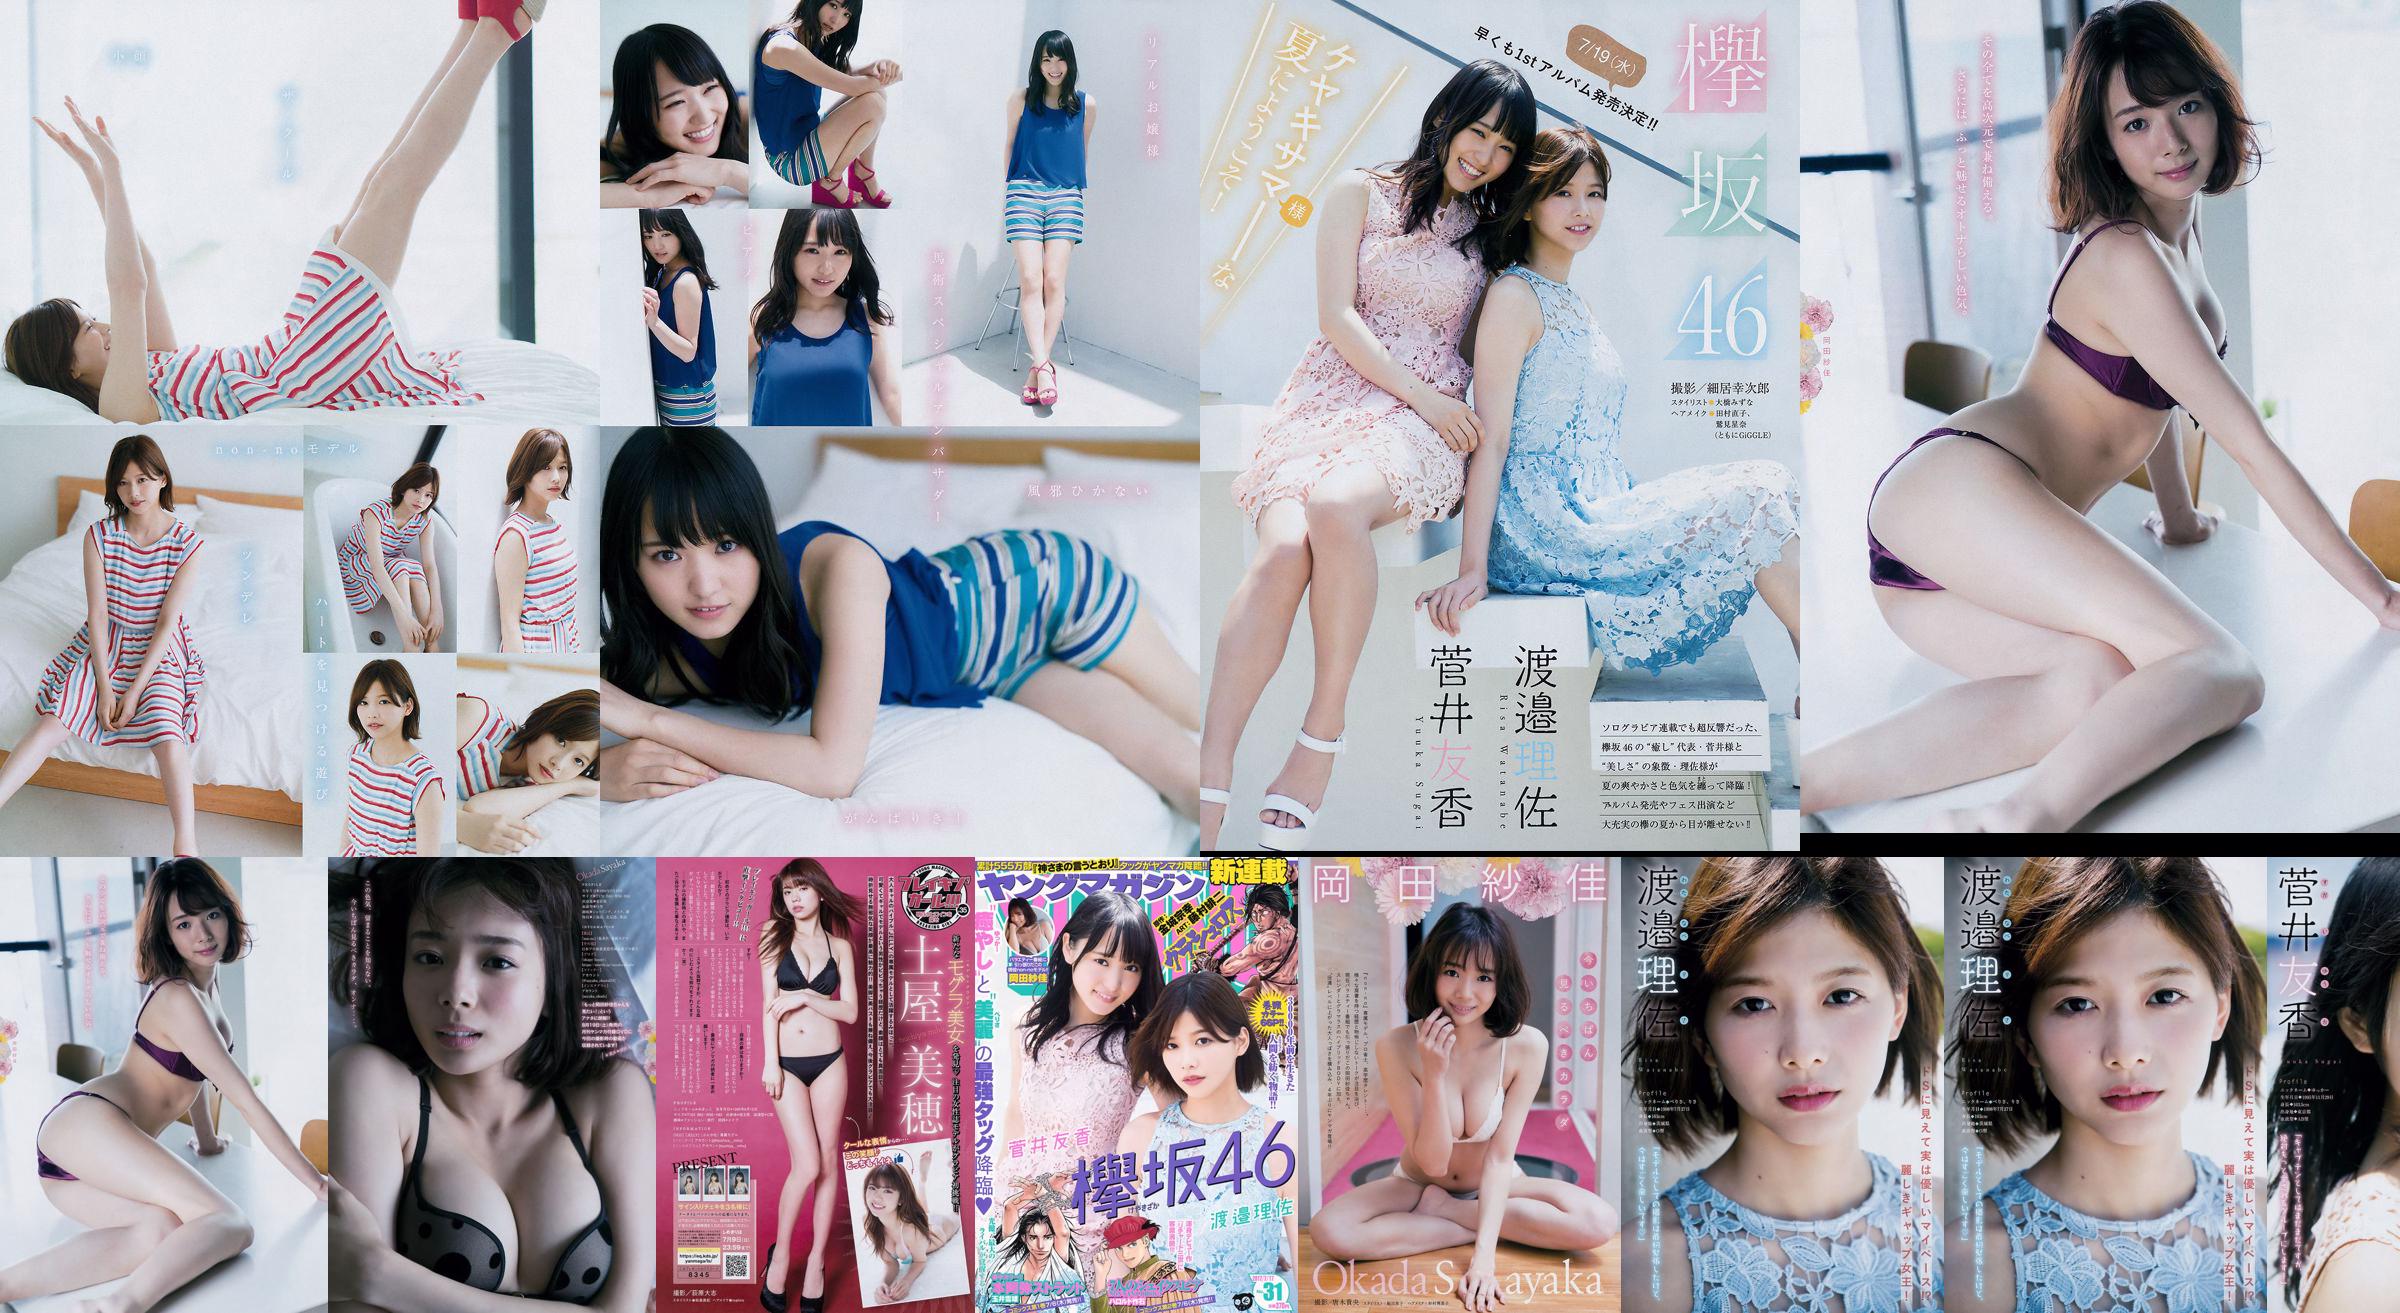 [Young Magazine] Watanabe Risa, Sugai Yuka, Okada Saika 2017 Magazine photo n ° 31 No.481436 Page 1